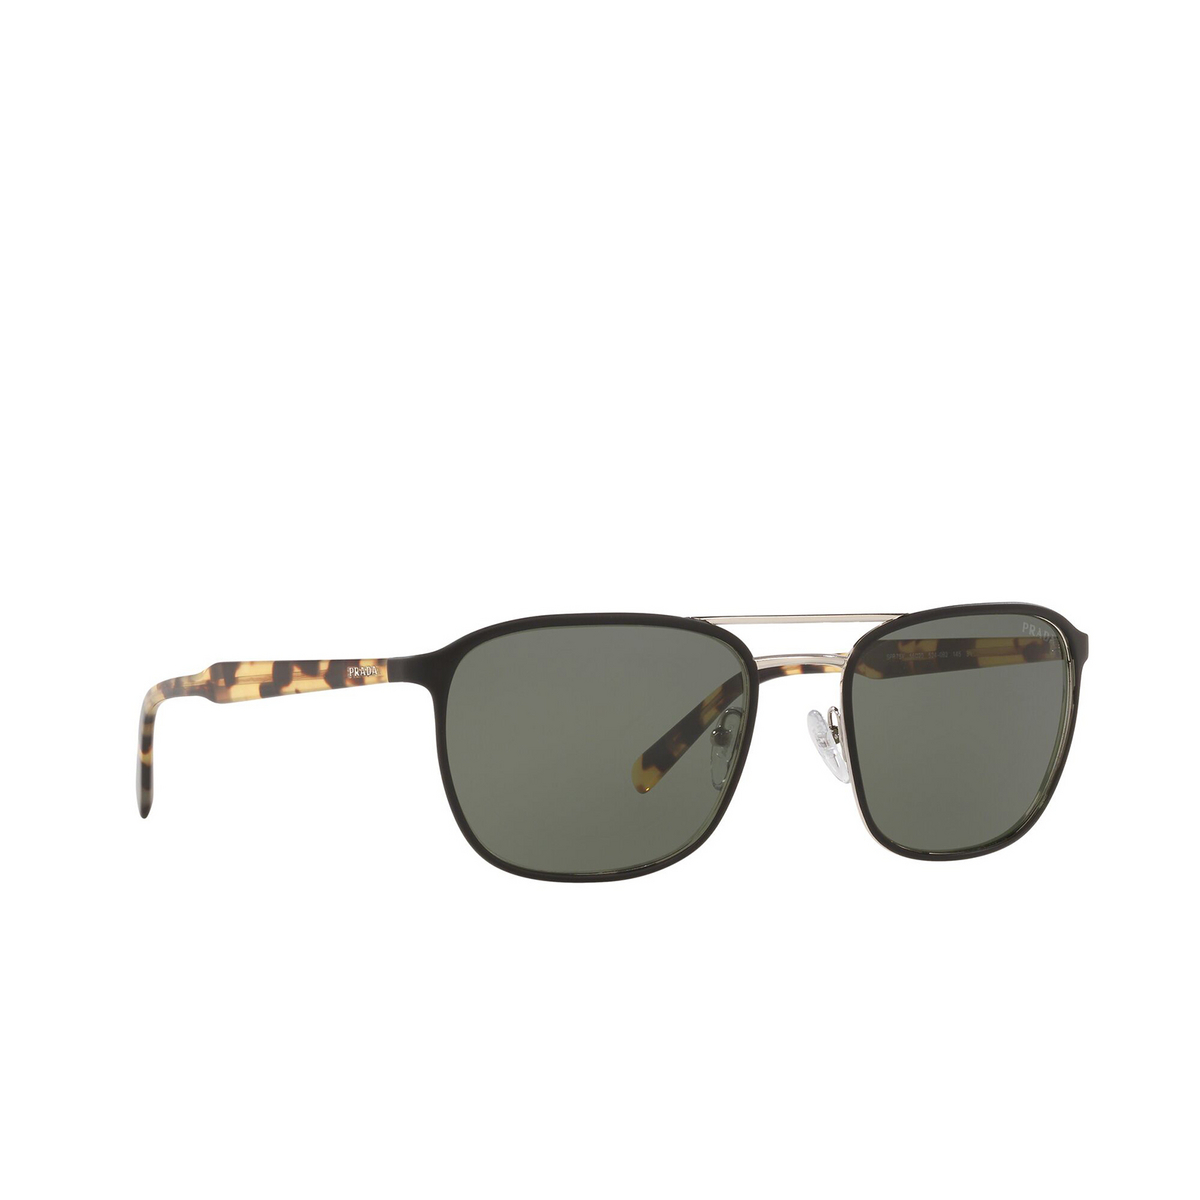 Prada® Square Sunglasses: Conceptual PR 75VS color Top Matte Black On Silver 5240B2 - three-quarters view.